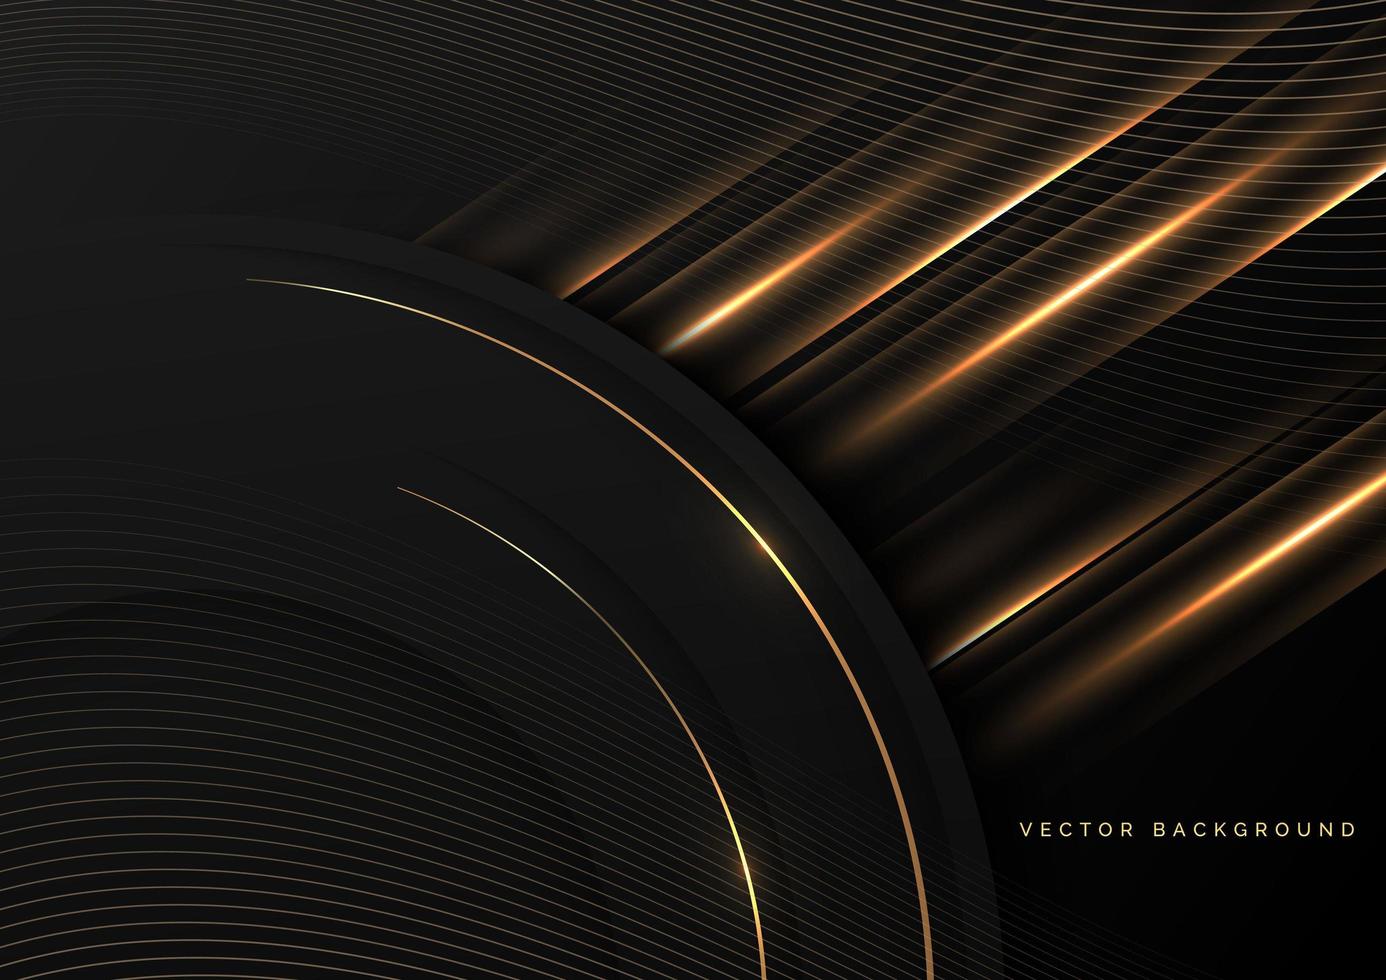 círculos negros de borde dorado 3d de lujo con efecto de iluminación brillante sobre fondo negro. concepto premium de lujo. vector